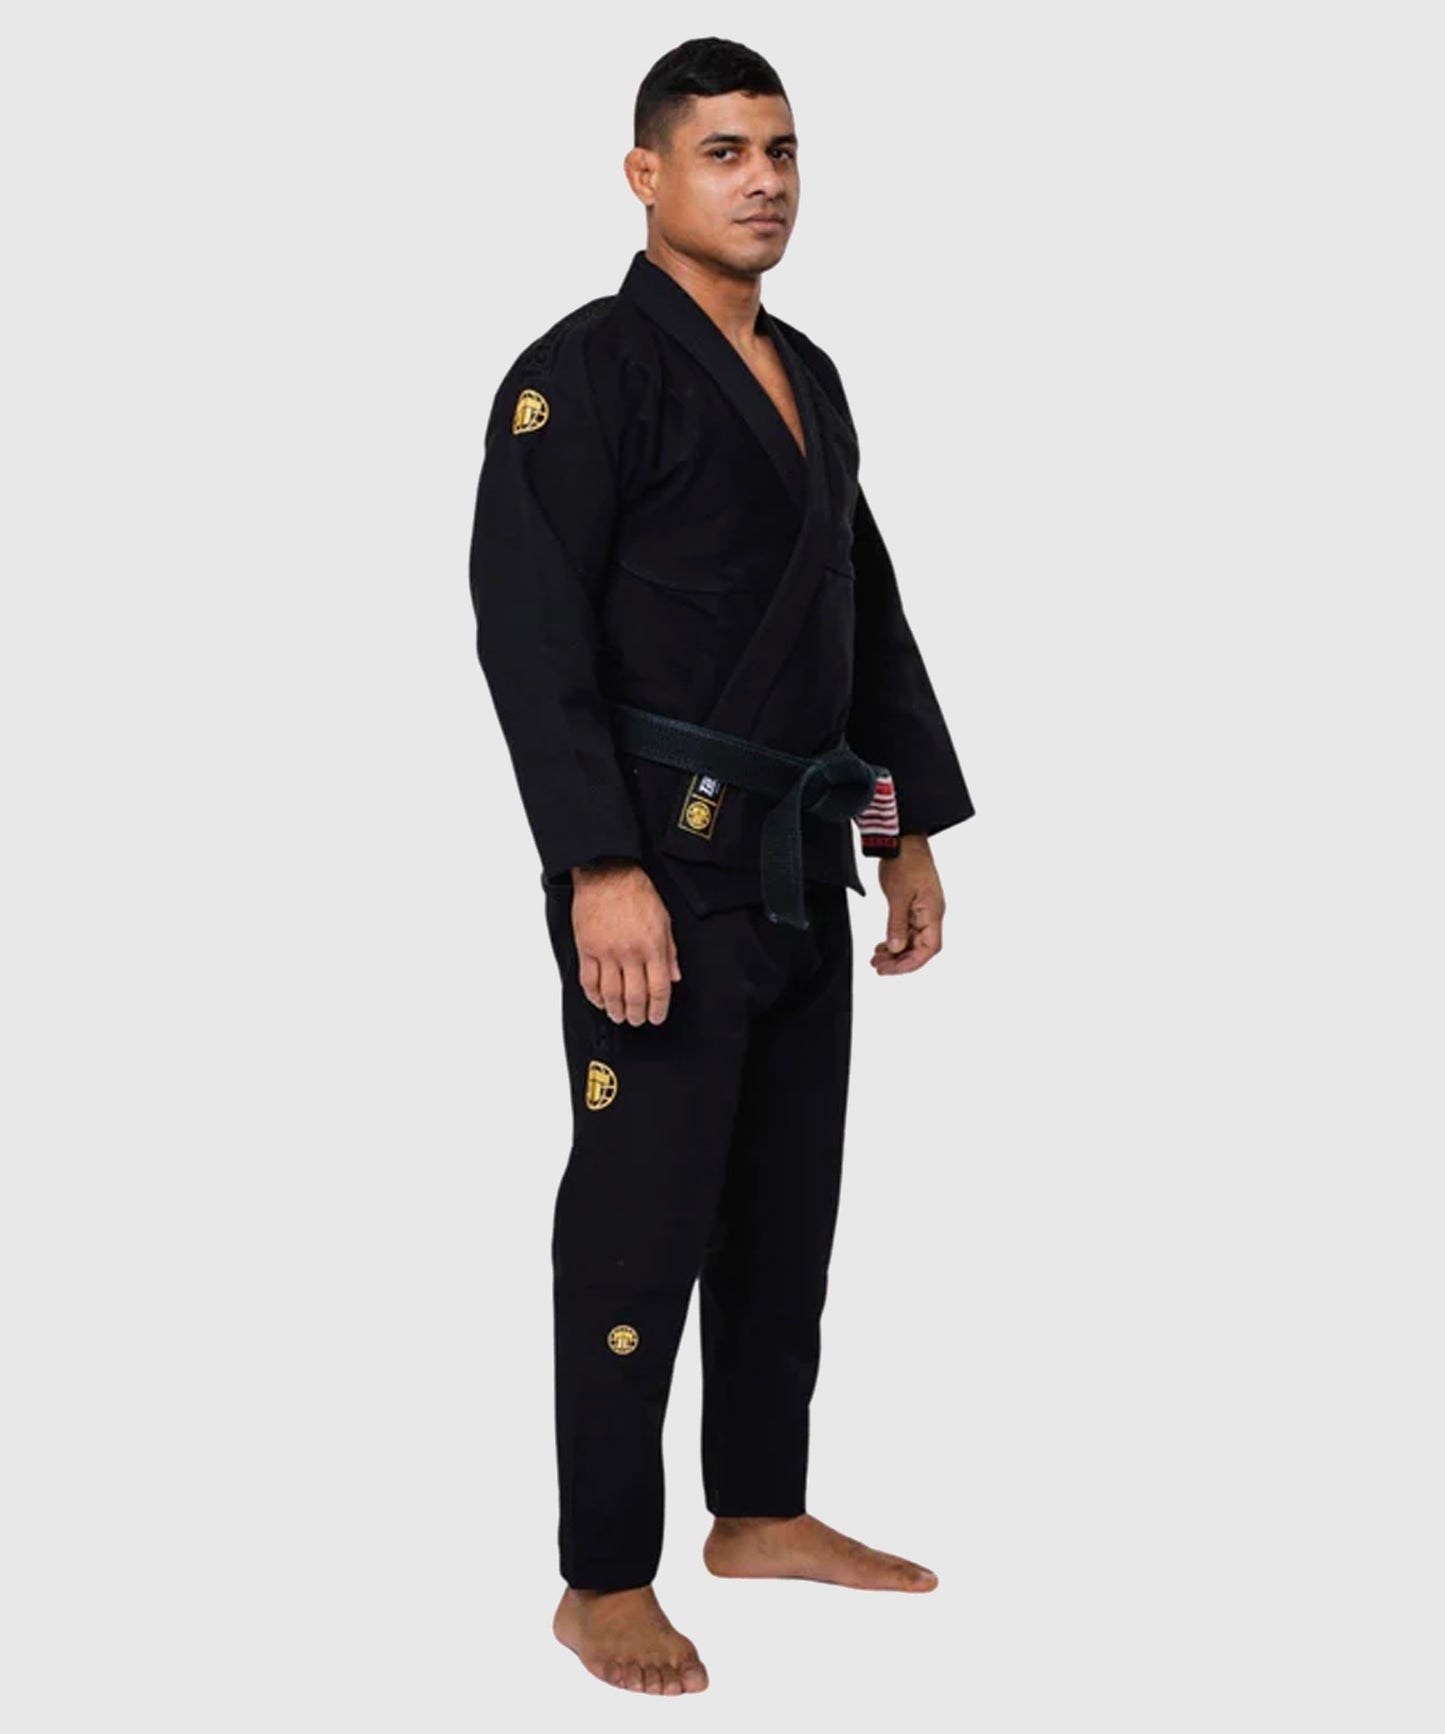 Kimono De Jjb Tatami Fightwear Estilo Gold Label - Noir